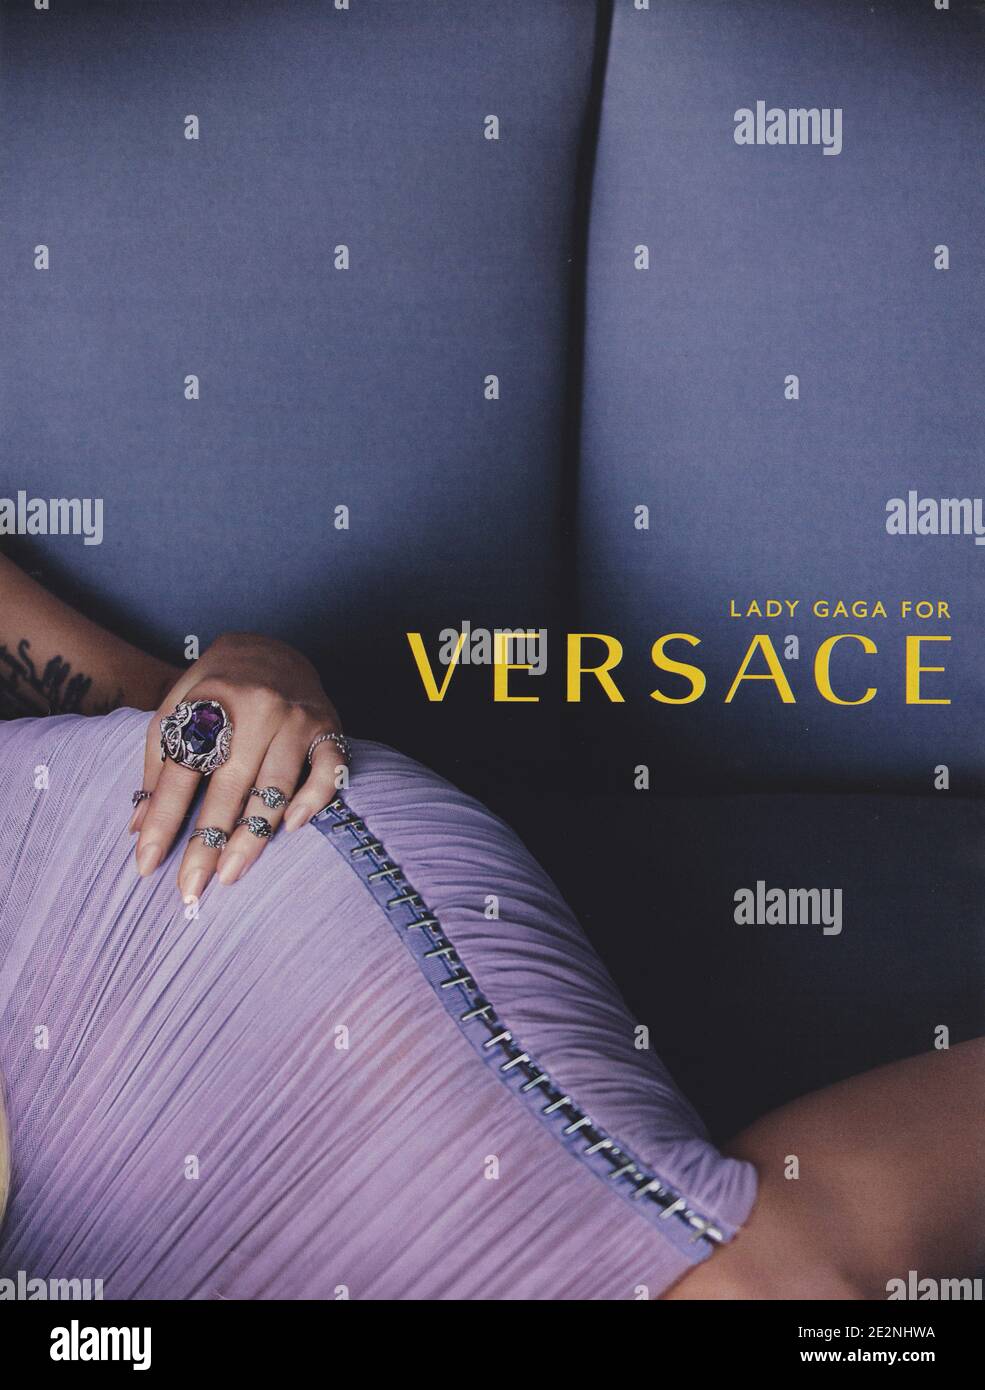 Cartel de publicidad VERSACE fashion house con Lady Gaga en la revista en papel desde el año 2014, anuncio, Creative Versace anuncio desde 2010s Foto de stock